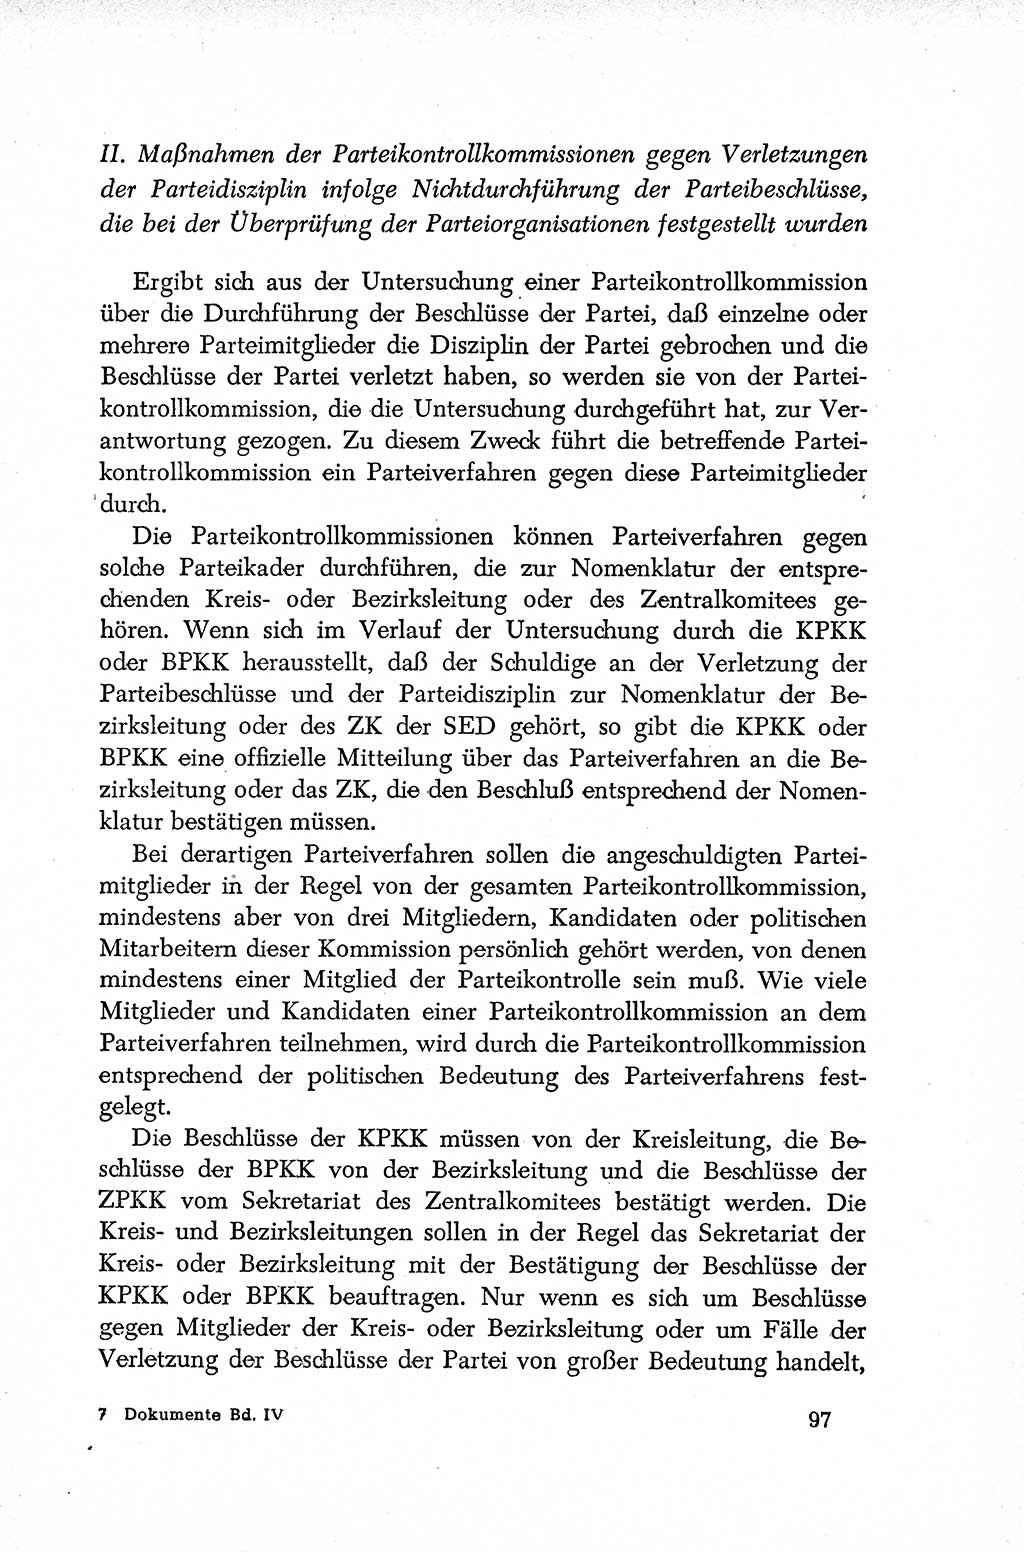 Dokumente der Sozialistischen Einheitspartei Deutschlands (SED) [Deutsche Demokratische Republik (DDR)] 1952-1953, Seite 97 (Dok. SED DDR 1952-1953, S. 97)